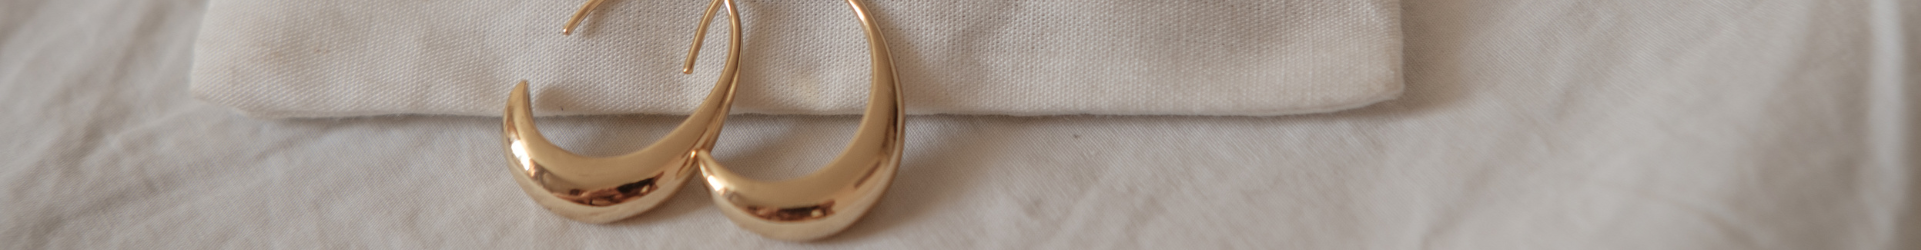 close up of gold hoop earrings